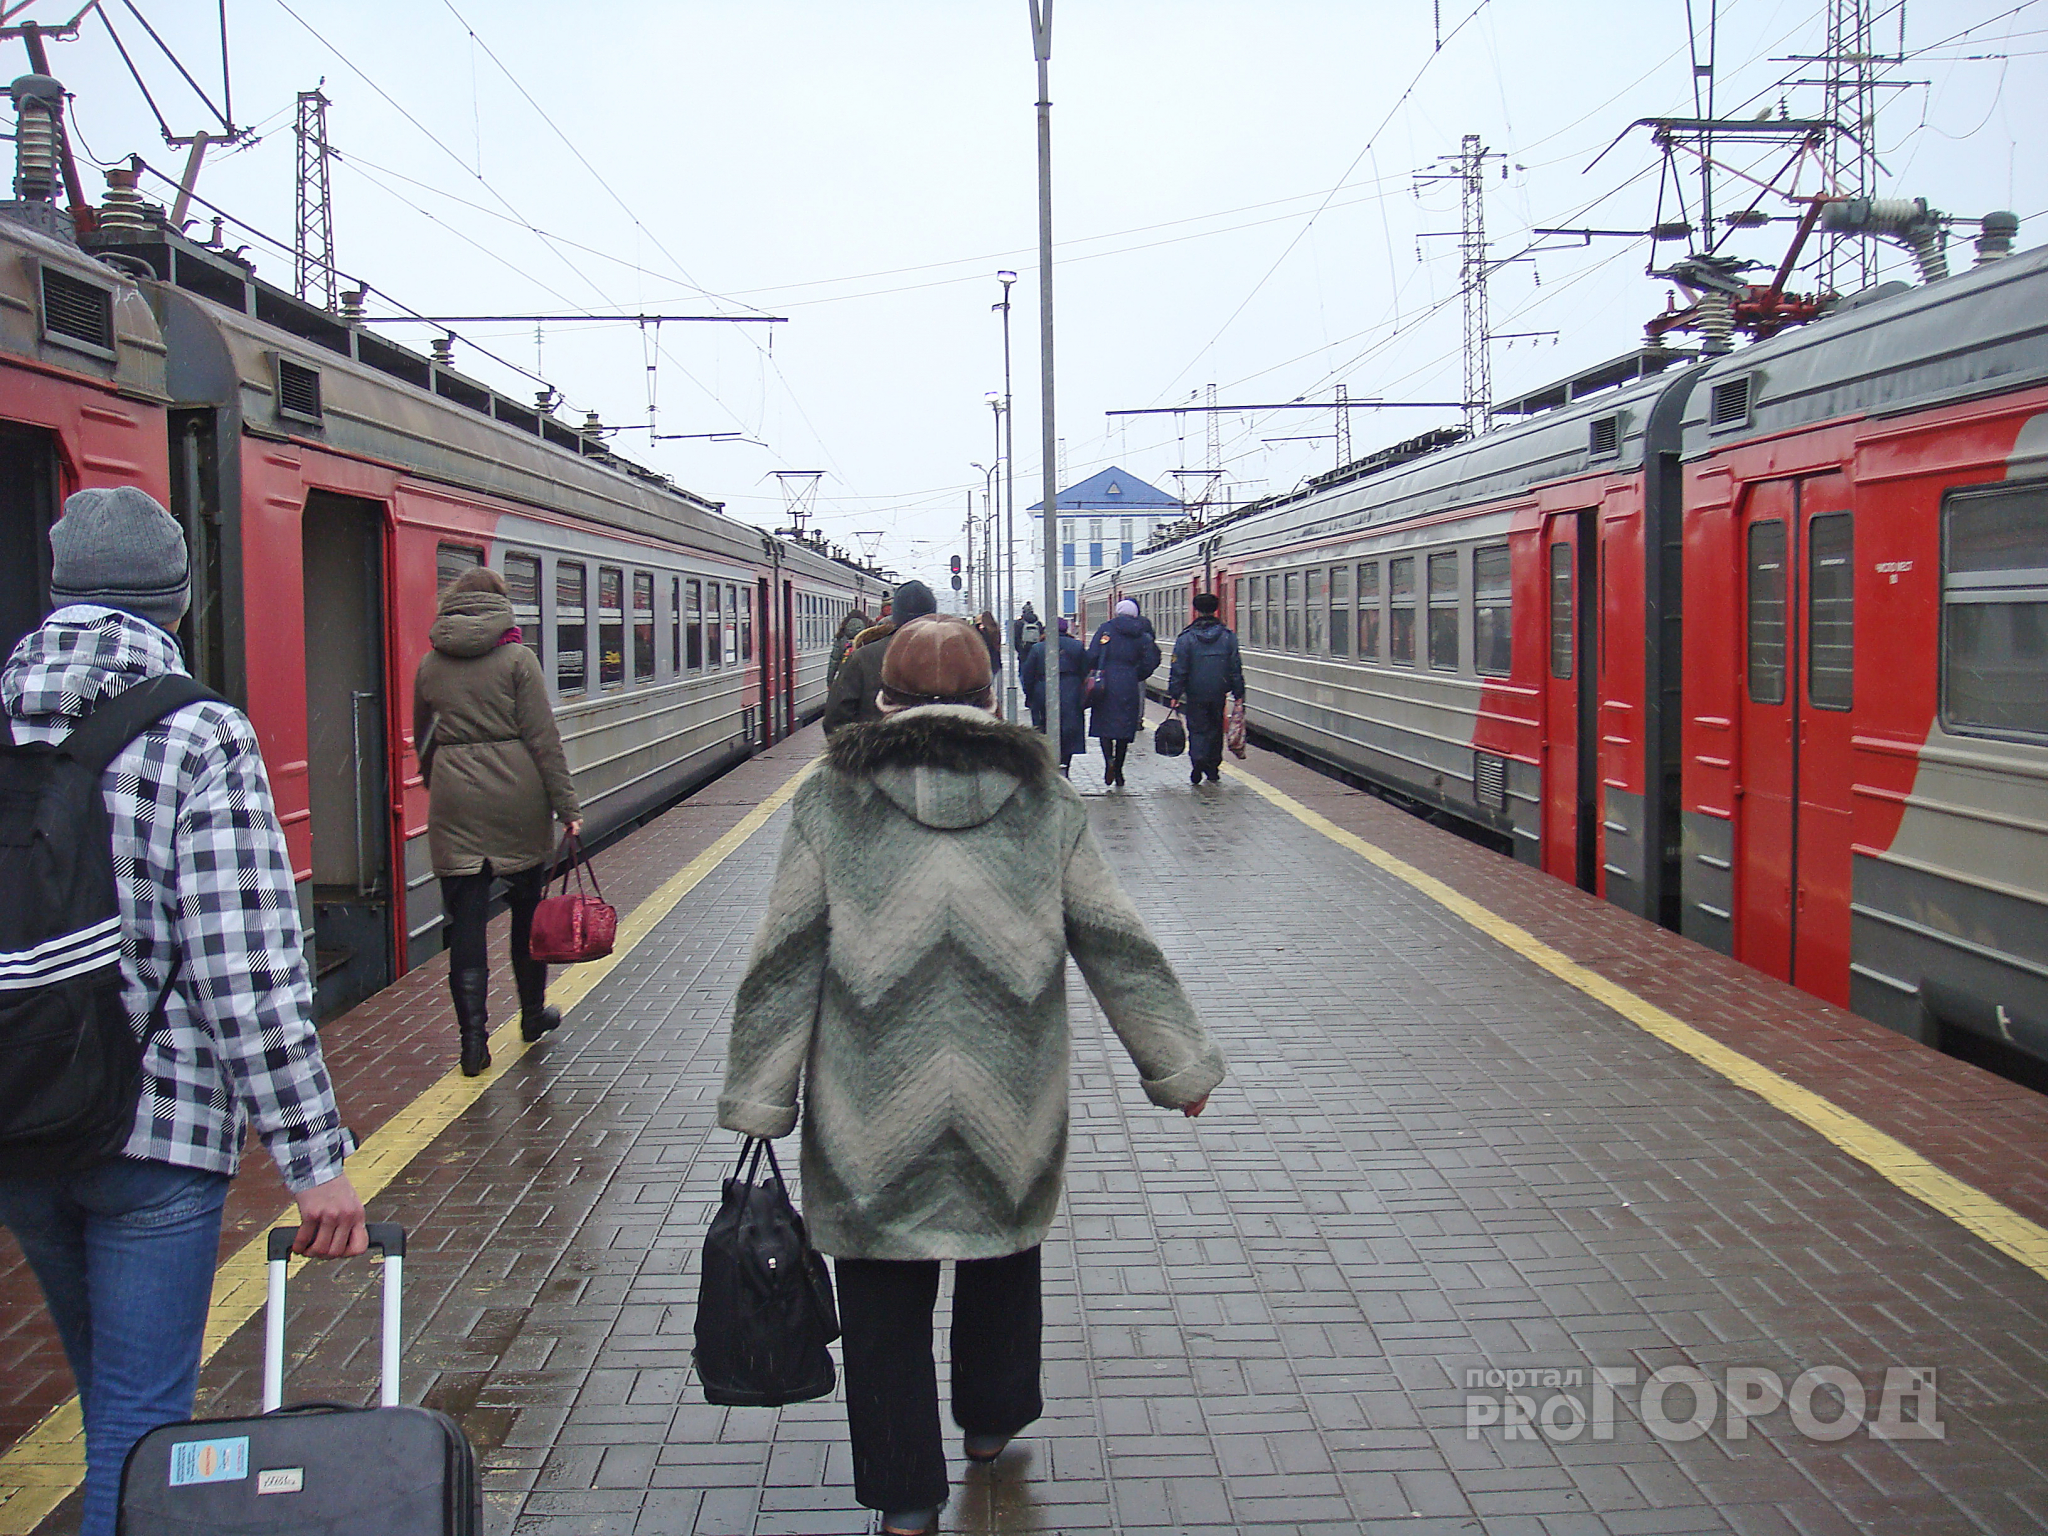 Авторская колонка: поездка на электричке до Шилово - это настоящее испытание нервов сил и терпения